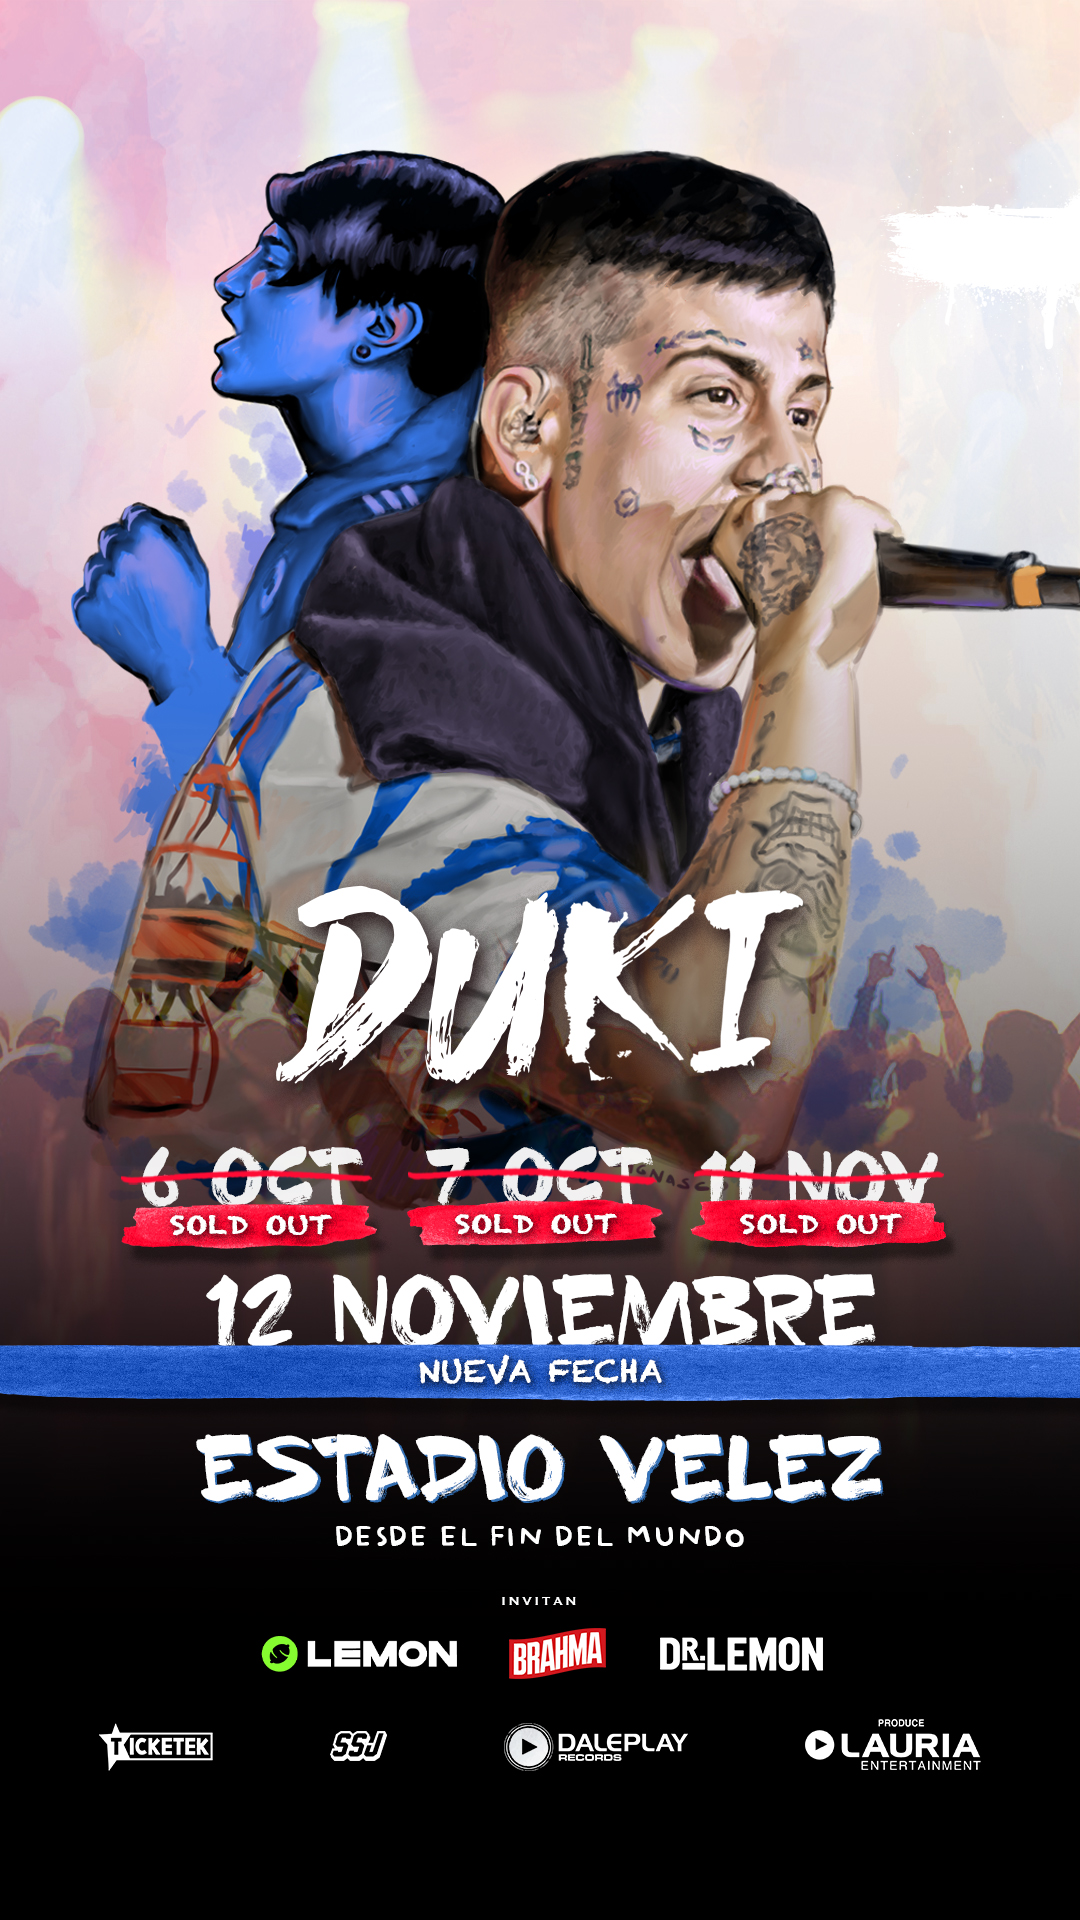 "Desde el fin del mundo", así se llama la gira de Duki que tendrá cuatro fechas en Vélez: 6 y 7 de octubre, 11 de noviembre, agotadas, y la nueva fecha del 12 de noviembre